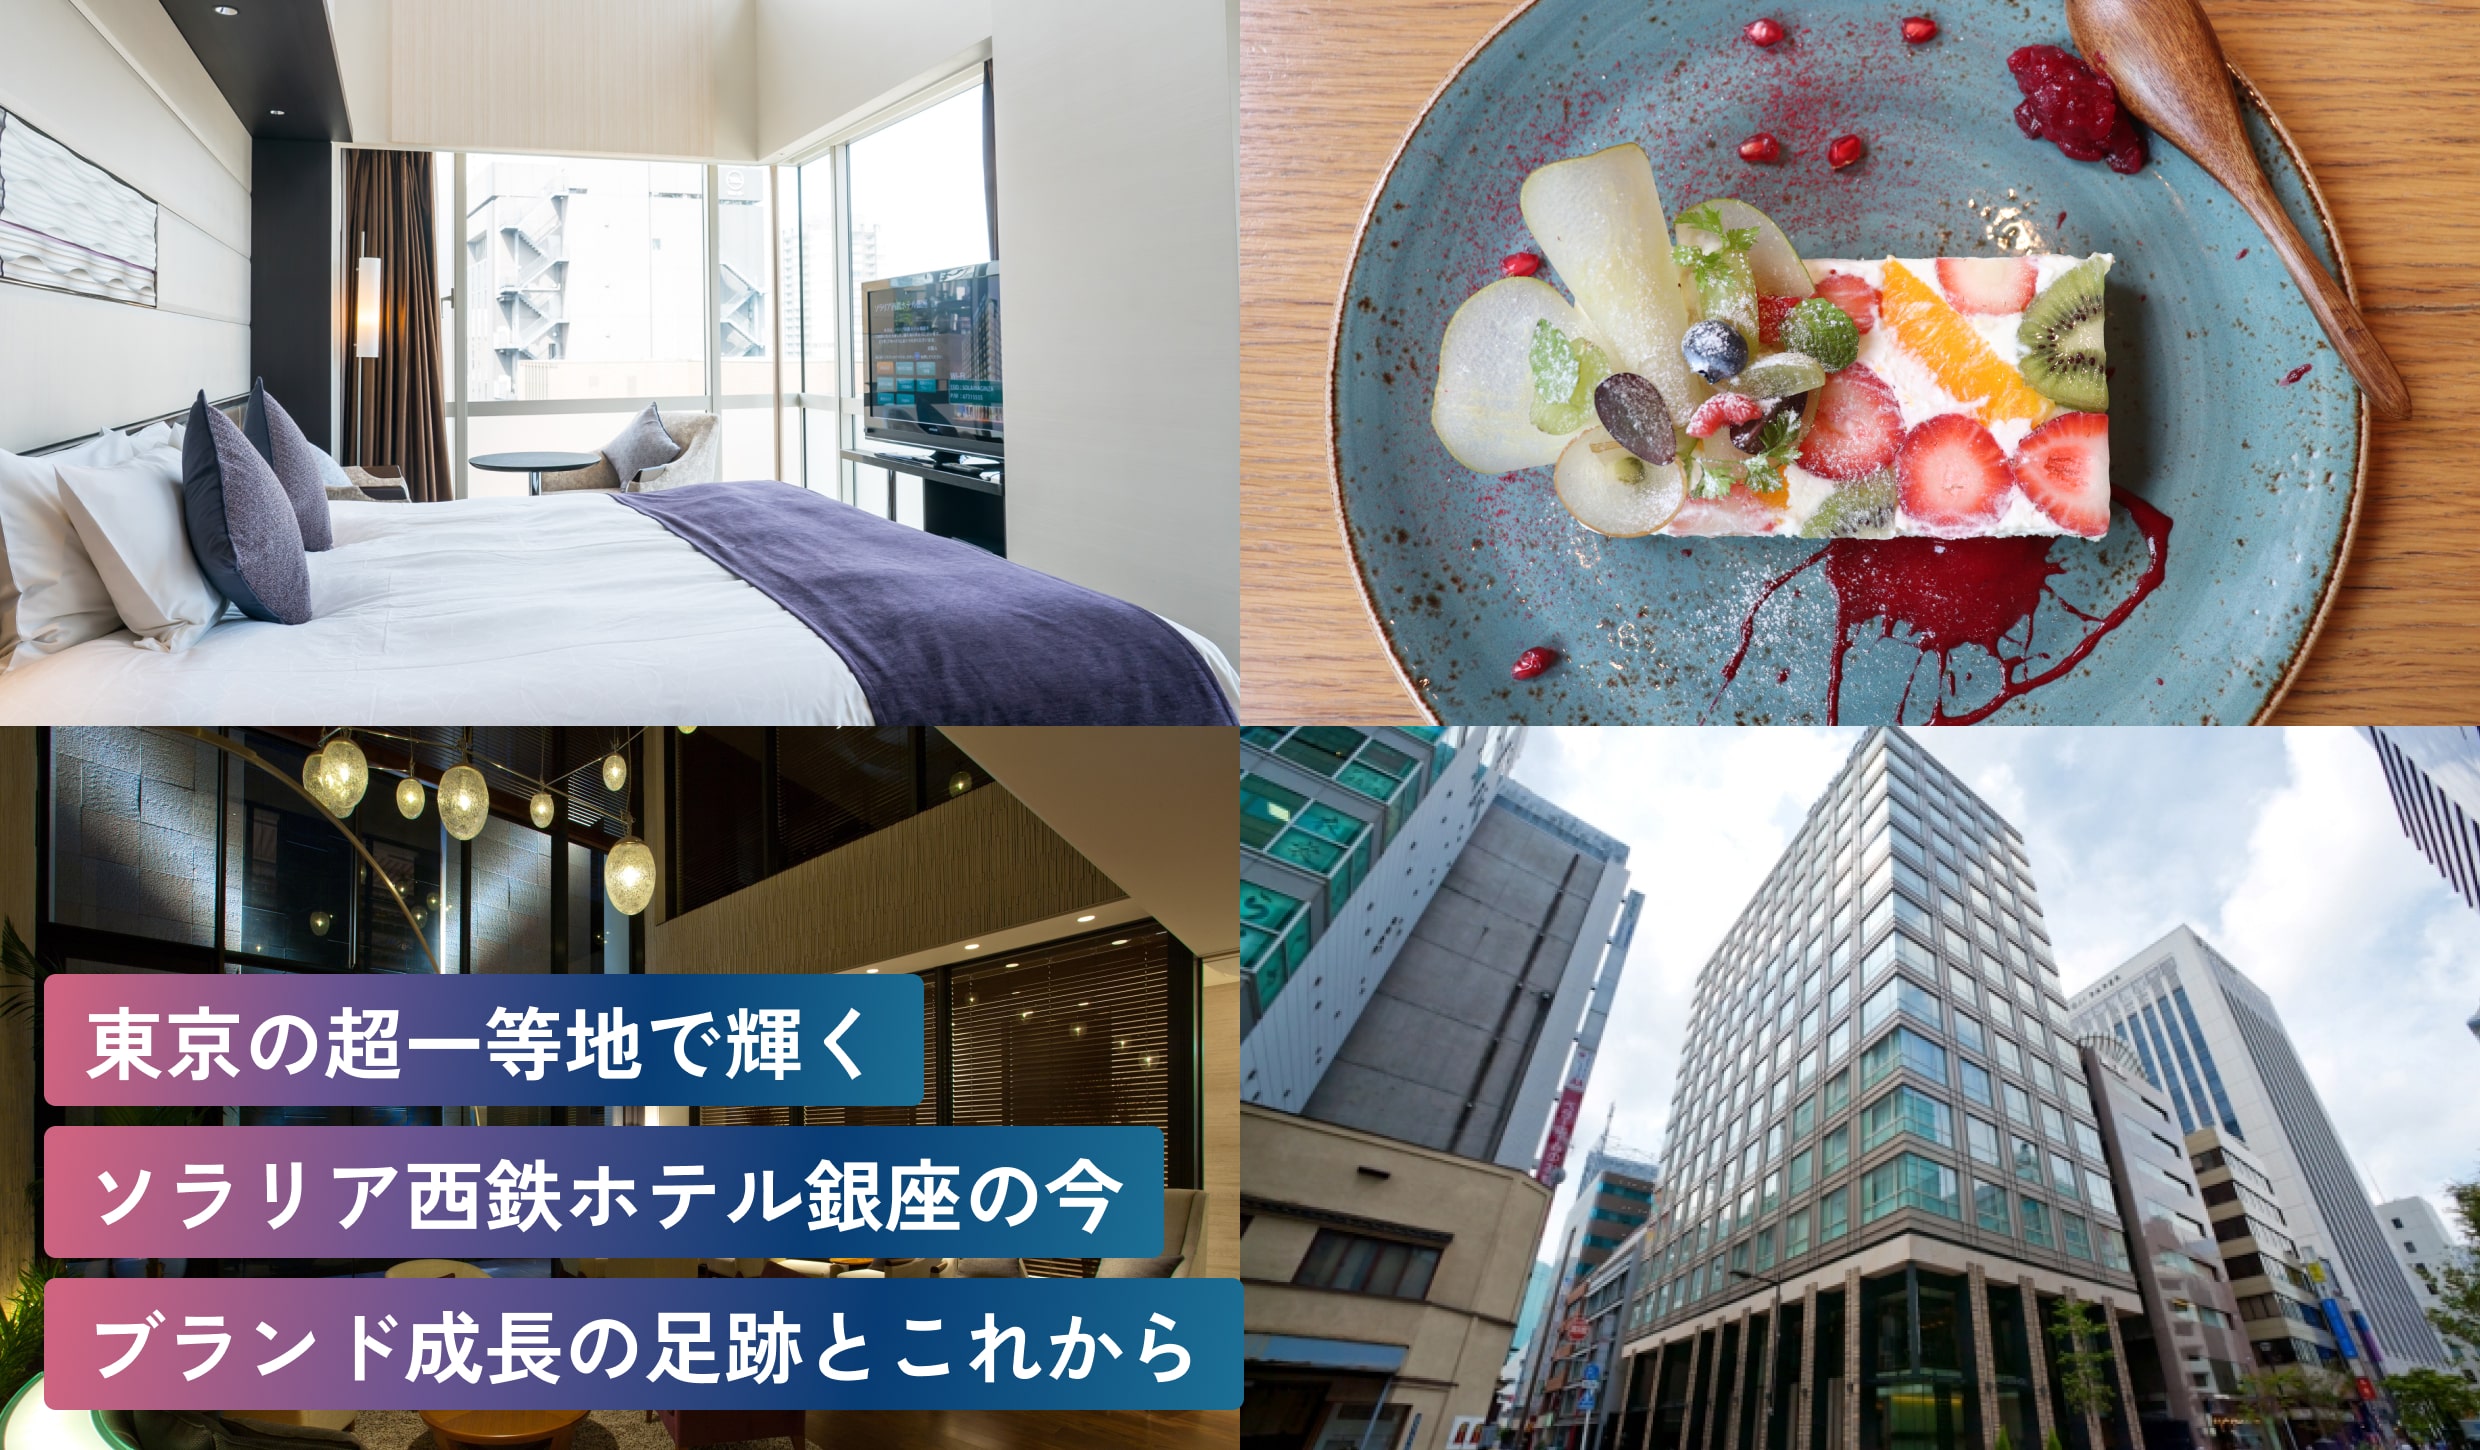 東京の超一等地で輝くソラリア西鉄ホテル銀座の今。ブランド成長の足跡とこれから